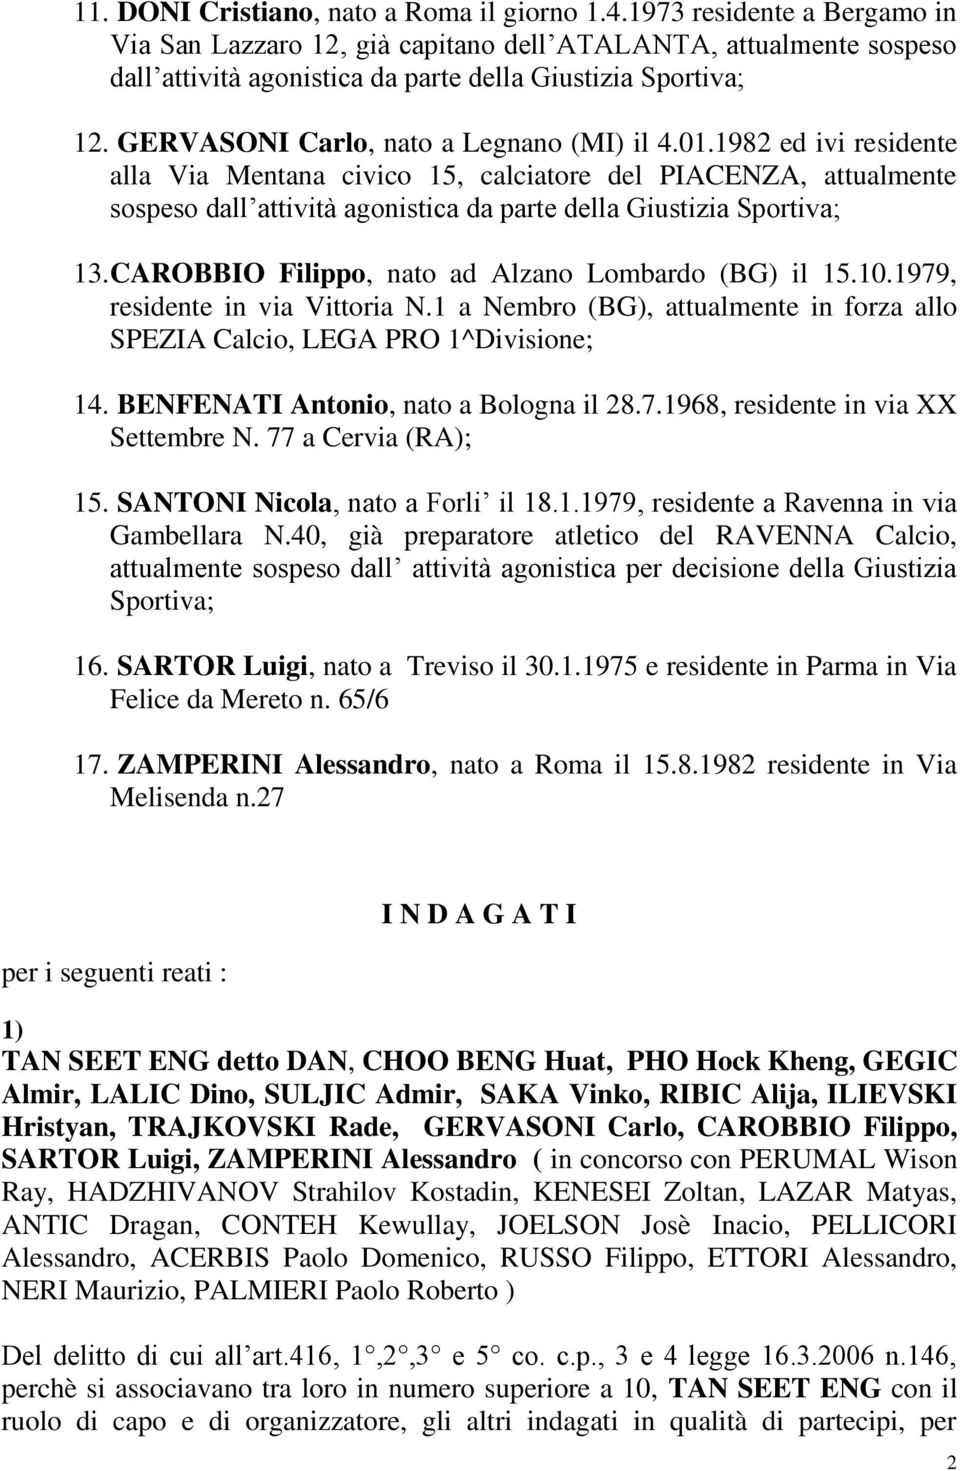 GERVASONI Carlo, nato a Legnano (MI) il 4.01.